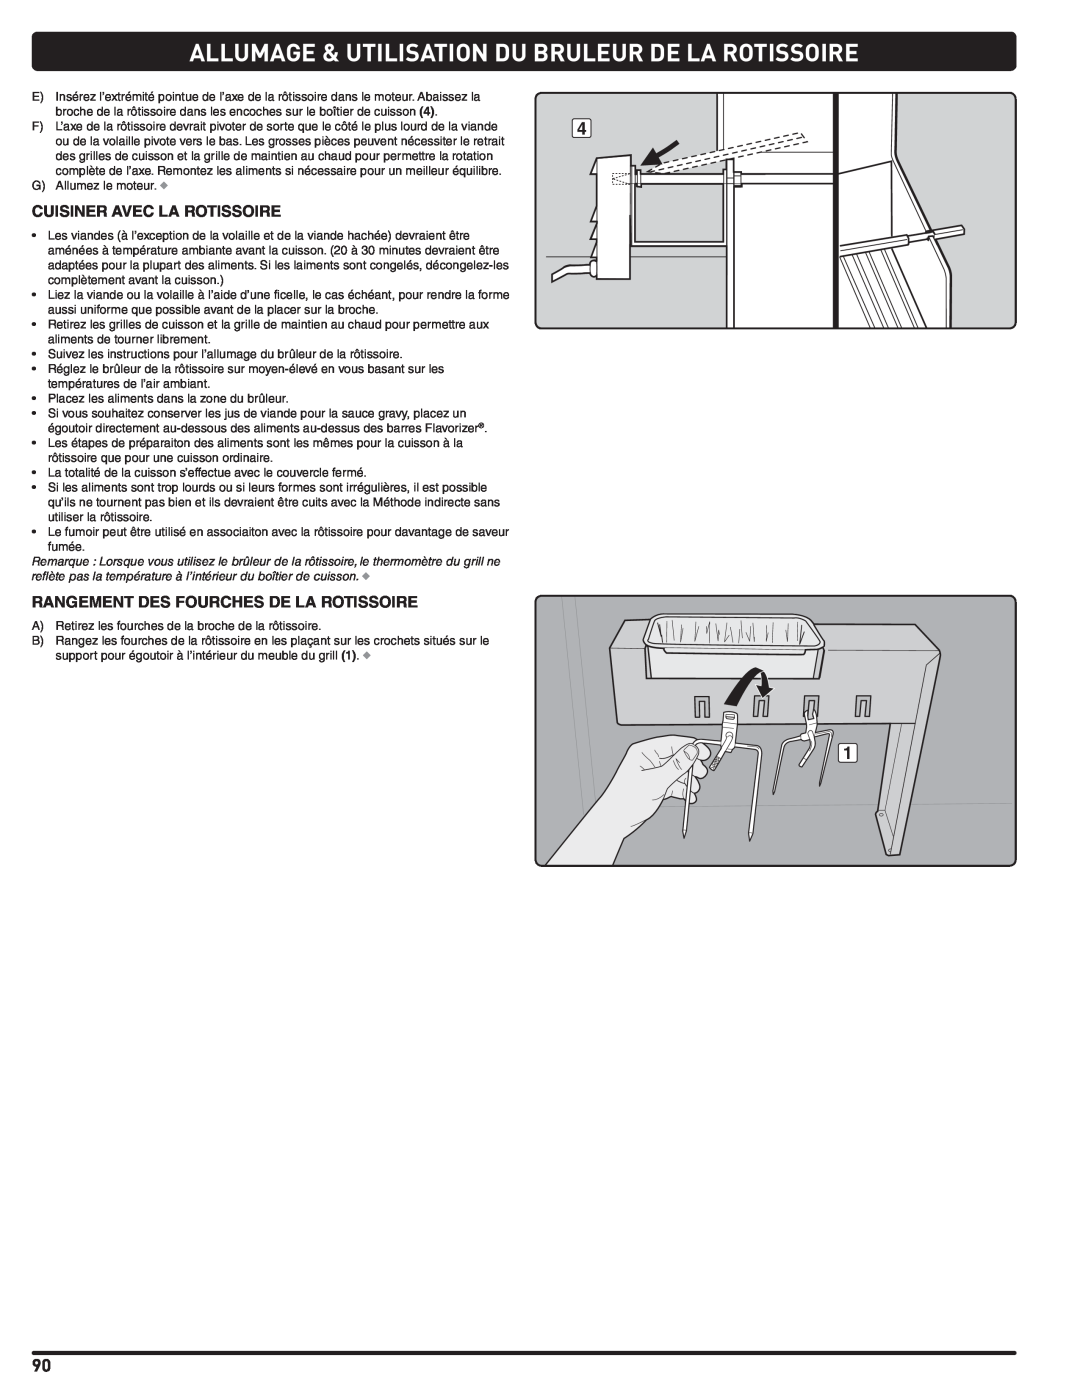 Weber 56576 manual Allumage & Utilisation Du Bruleur De La Rotissoire, Cuisiner Avec La Rotissoire 